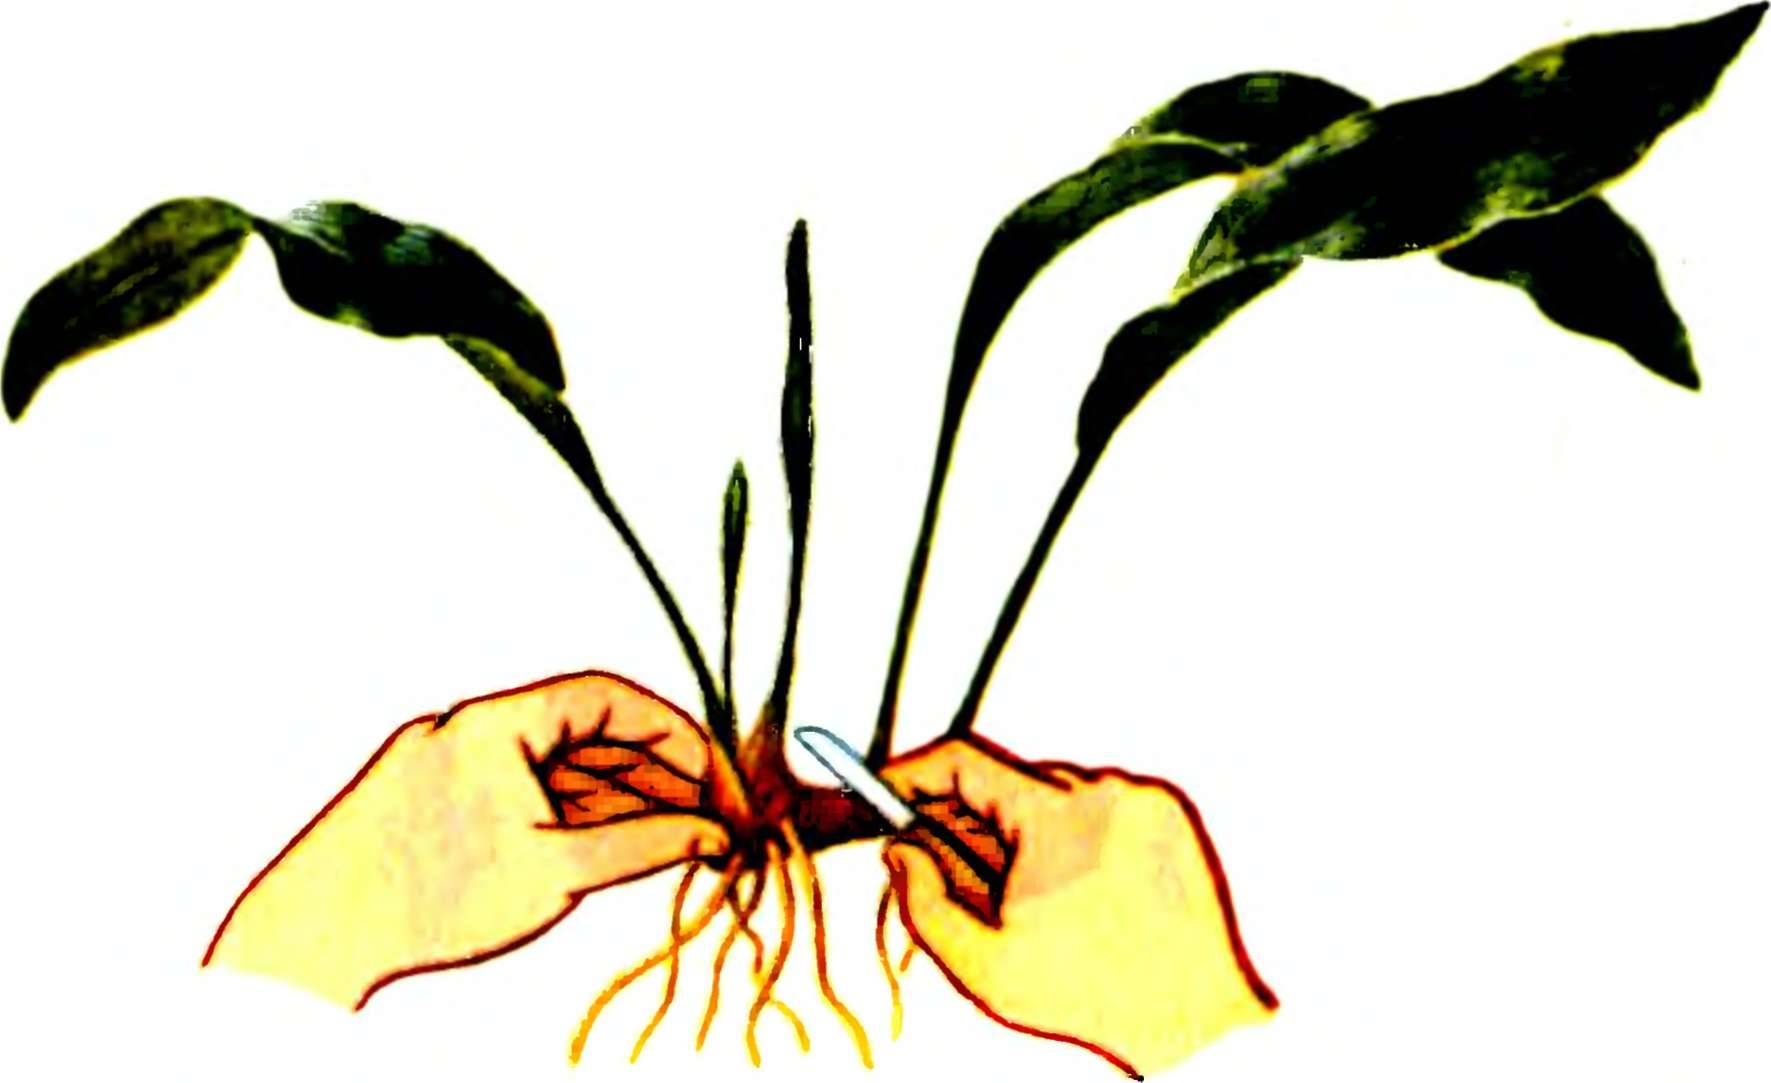 Аспидистра — одно из самых выносливых комнатных растений